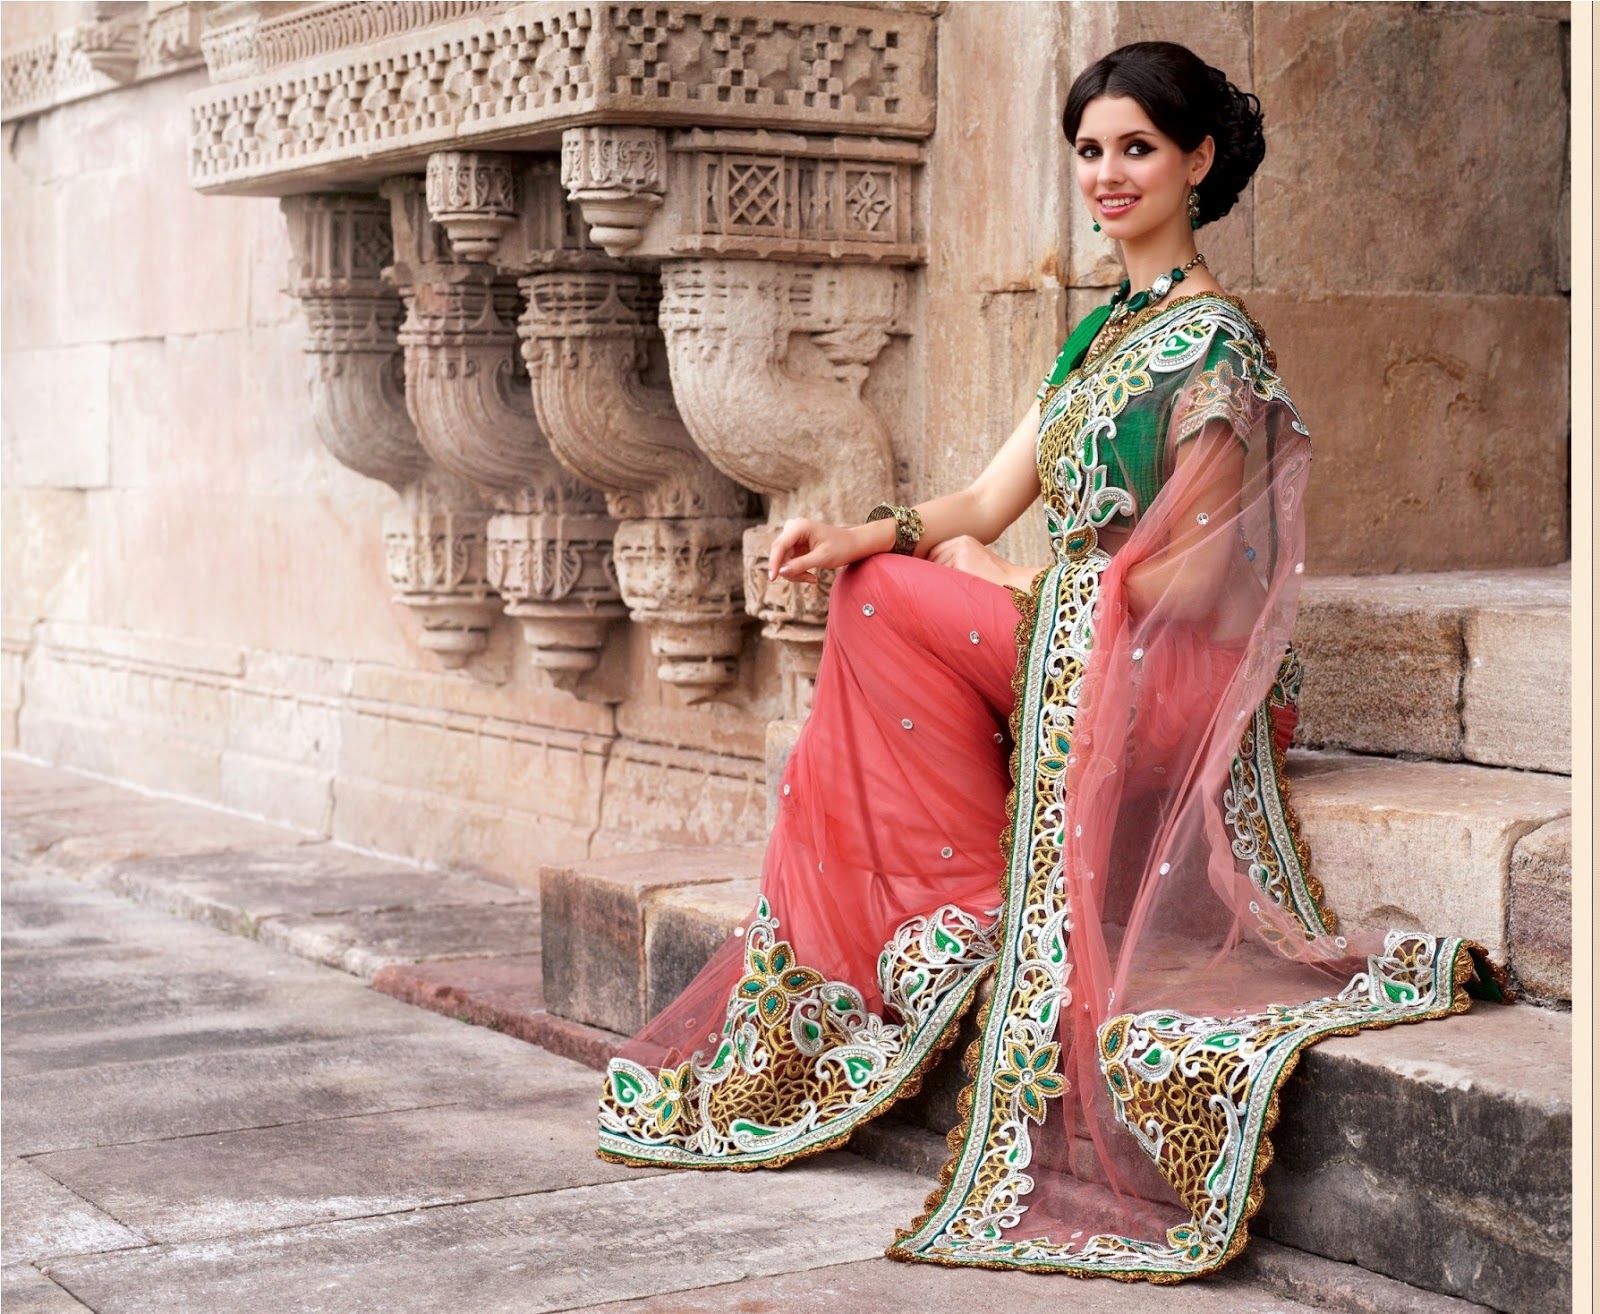 VIDÉO NO COMMENT // Le sari : vêtement indien.